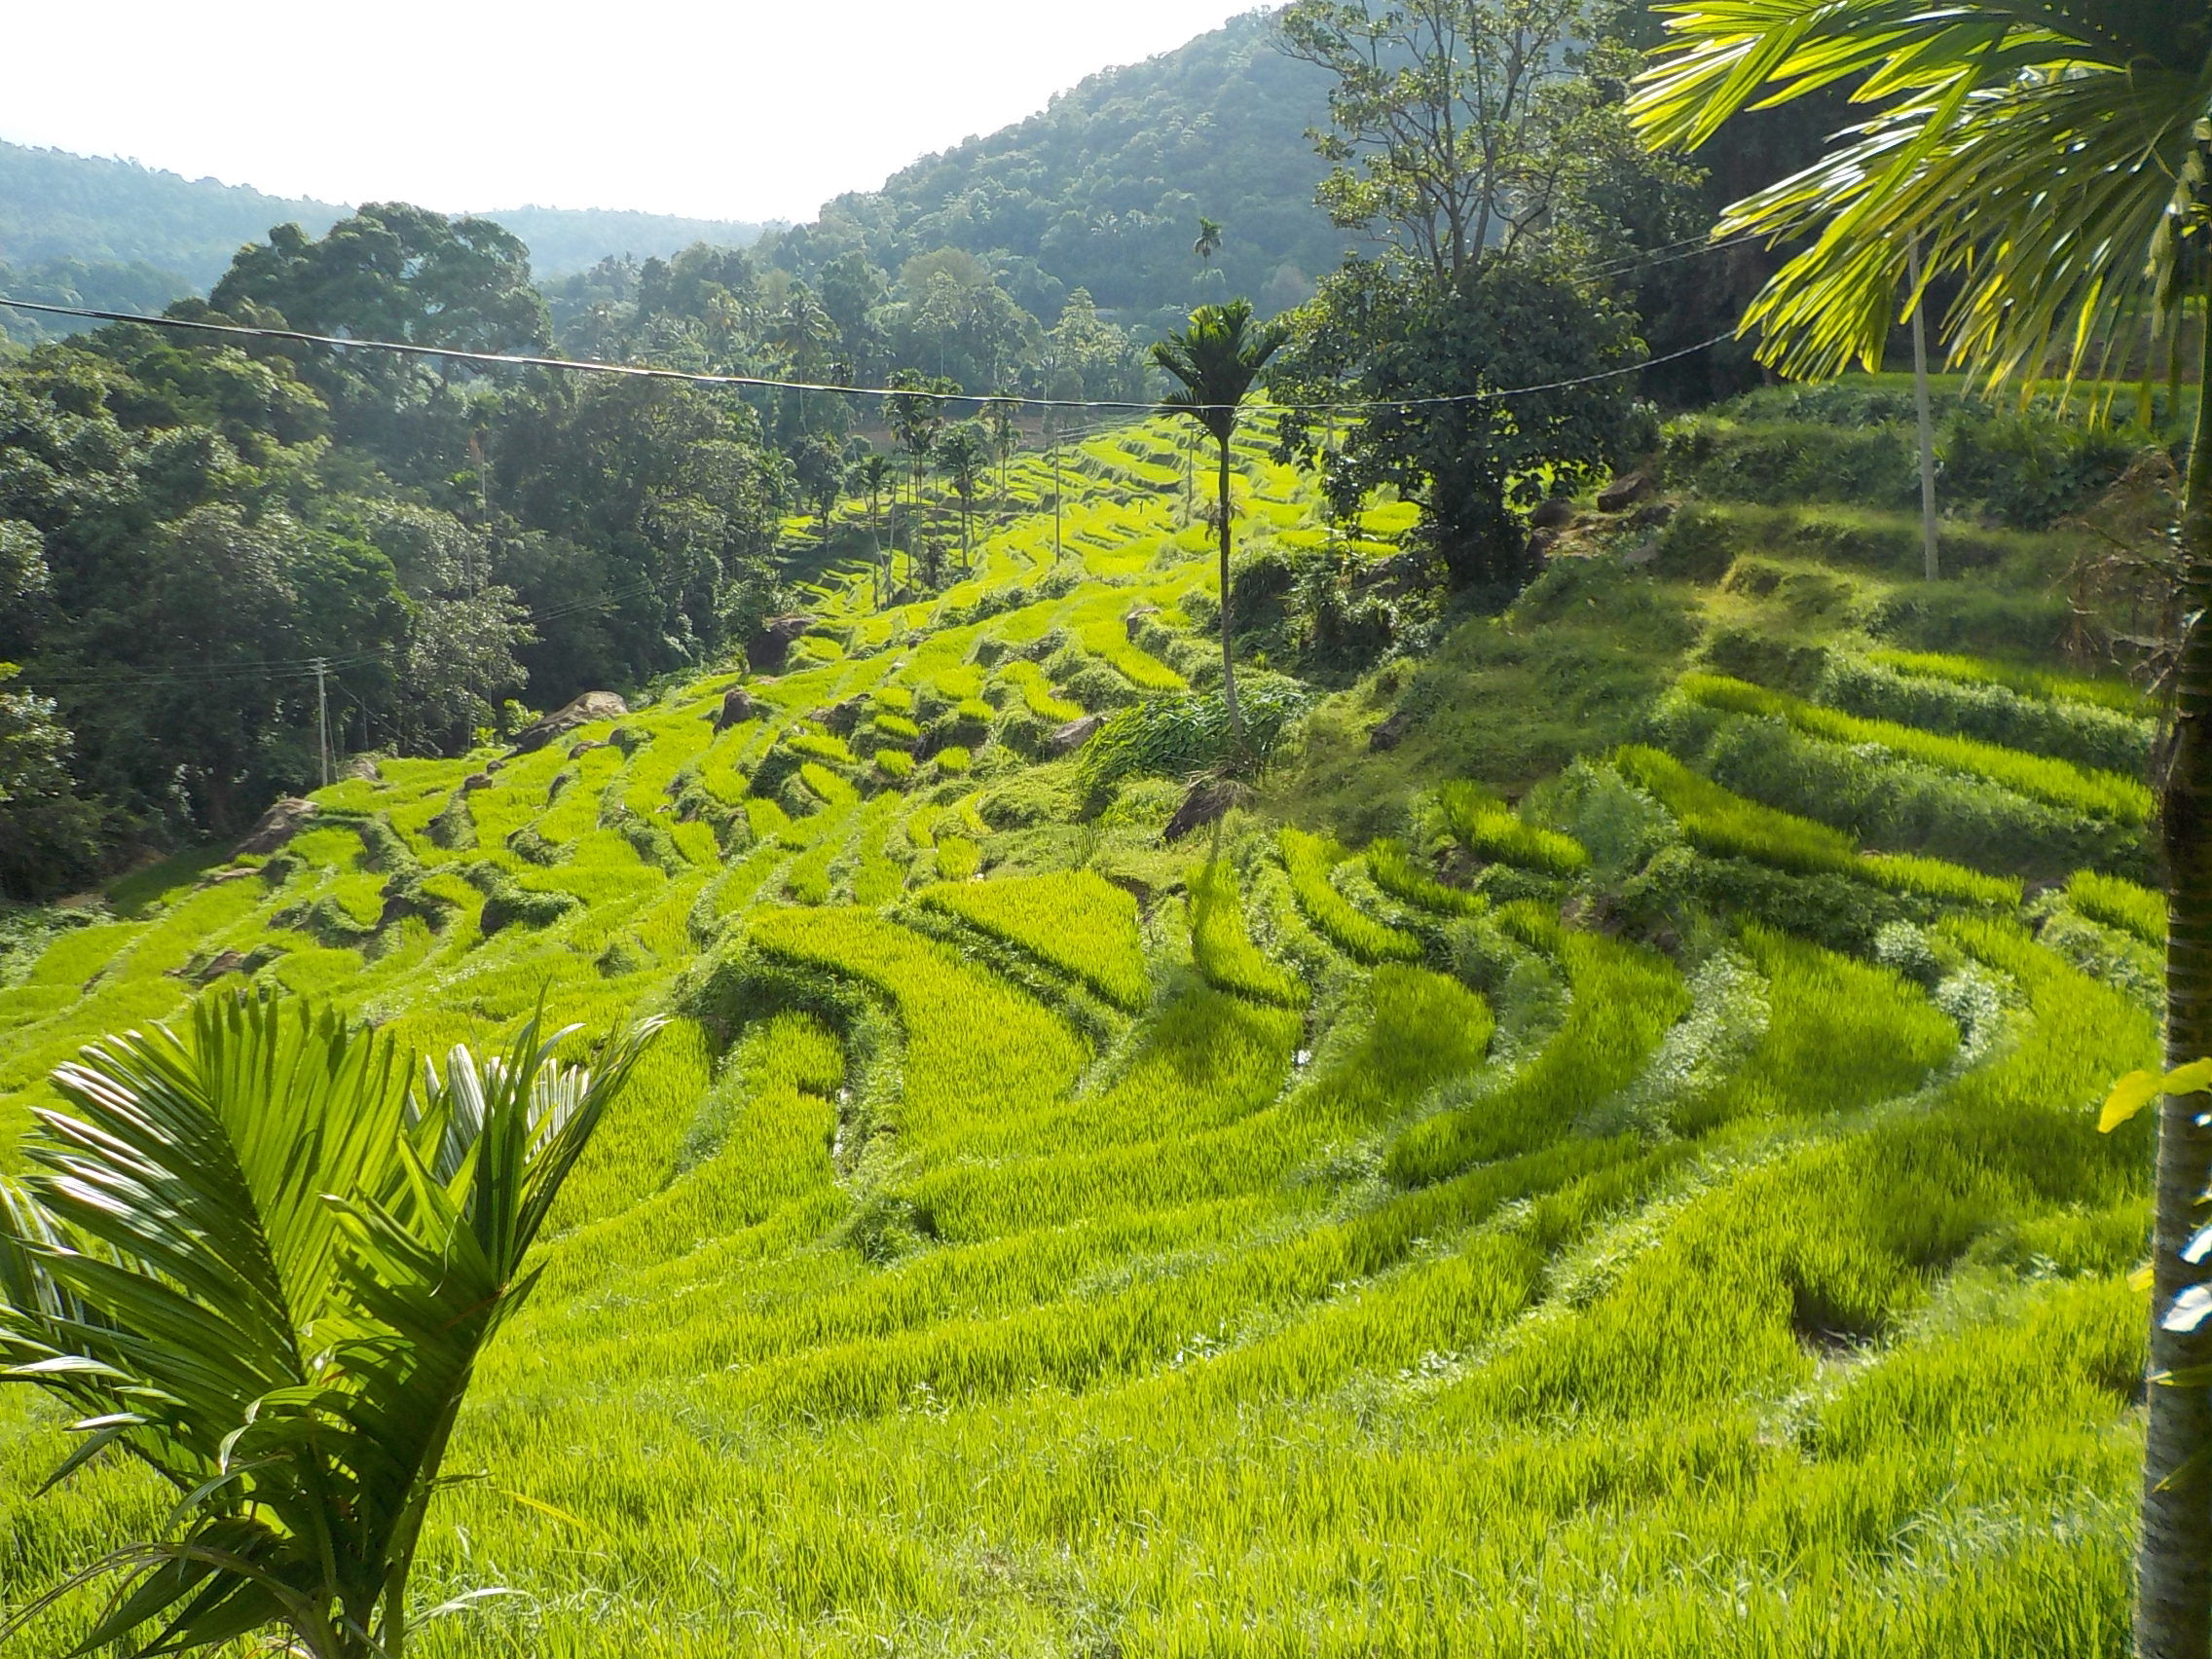 Les rizières sri lankaises